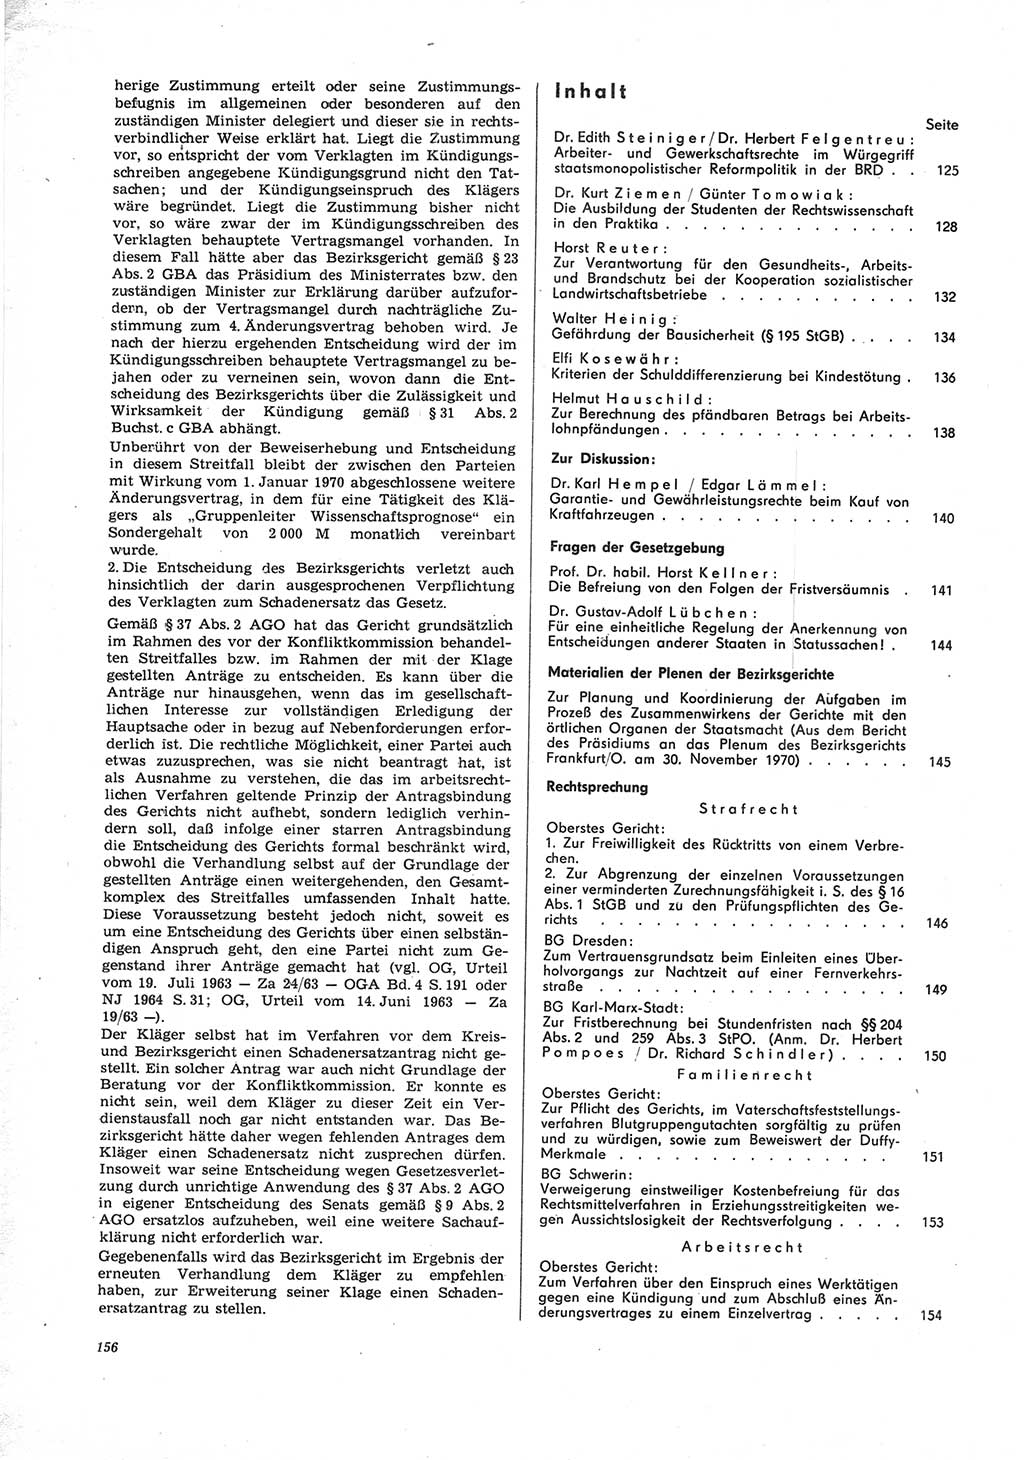 Neue Justiz (NJ), Zeitschrift für Recht und Rechtswissenschaft [Deutsche Demokratische Republik (DDR)], 25. Jahrgang 1971, Seite 156 (NJ DDR 1971, S. 156)